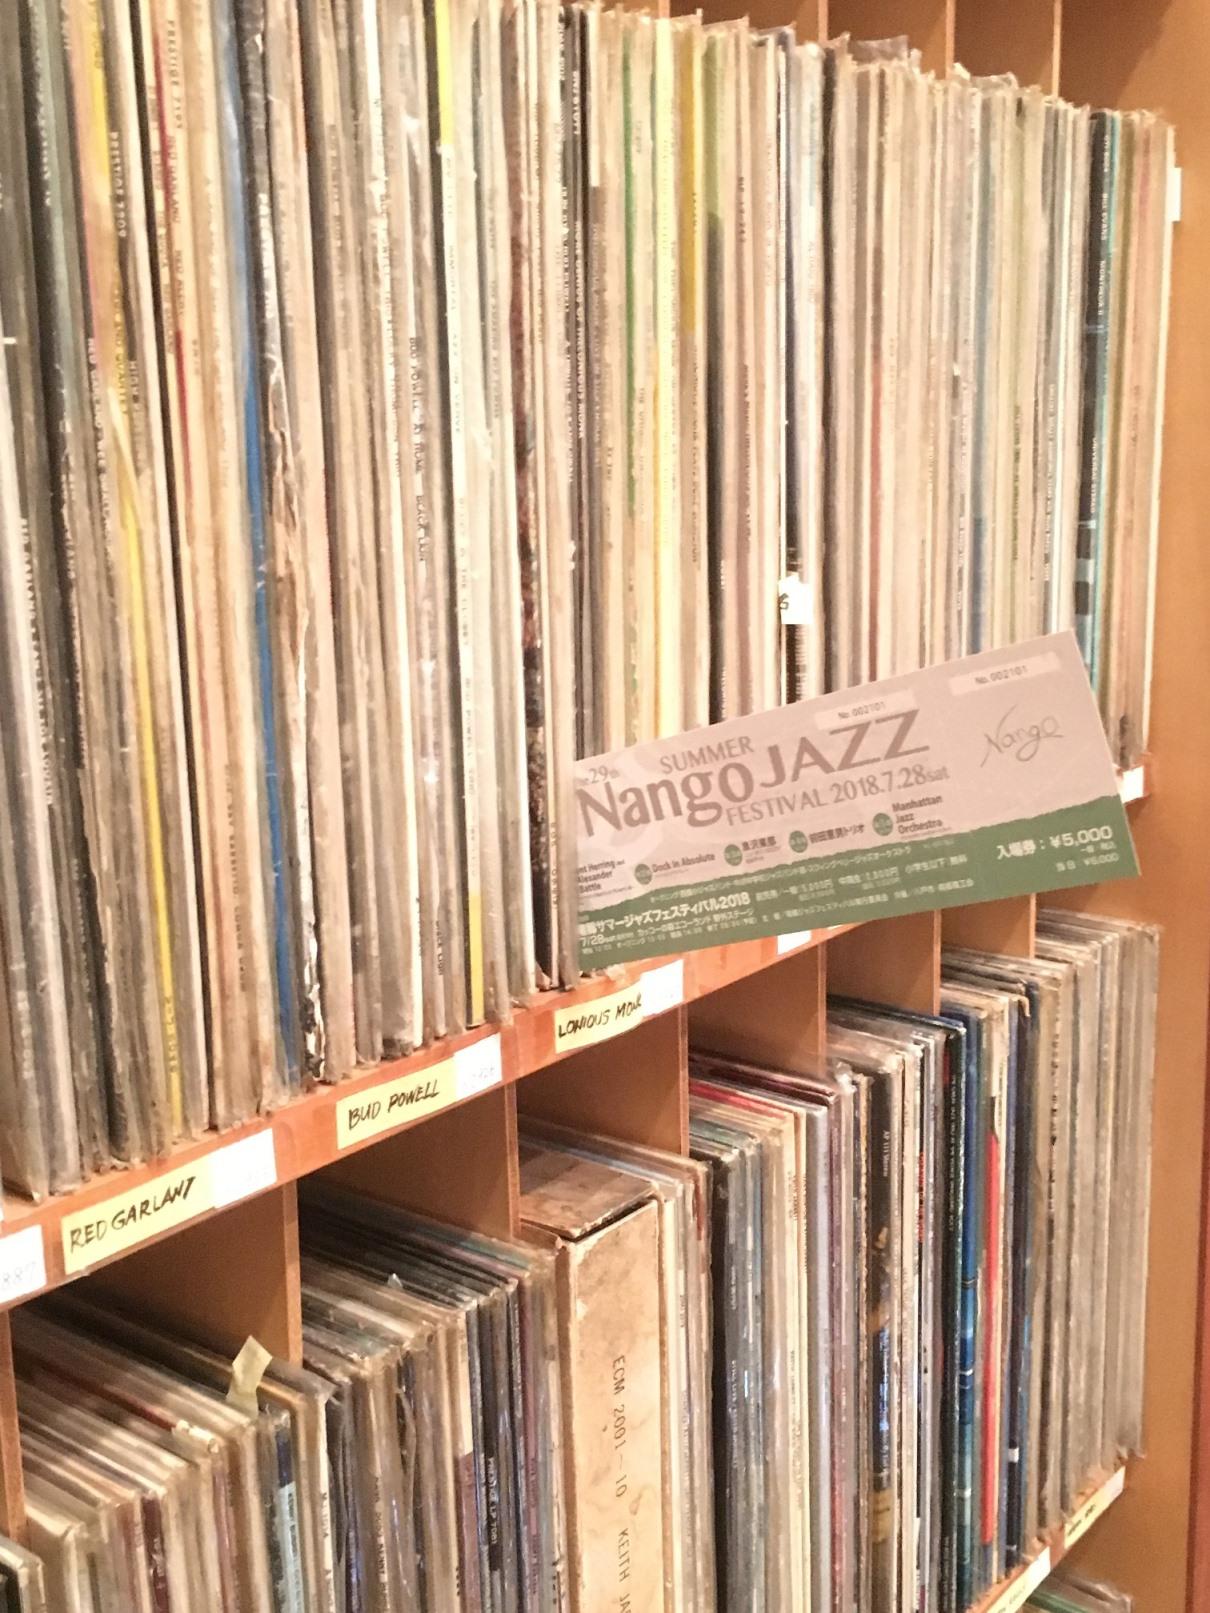 アナログレコード盤の棚にレコード盤と共に挟まれたサマージャズフェスティバル2018のチケットの写真